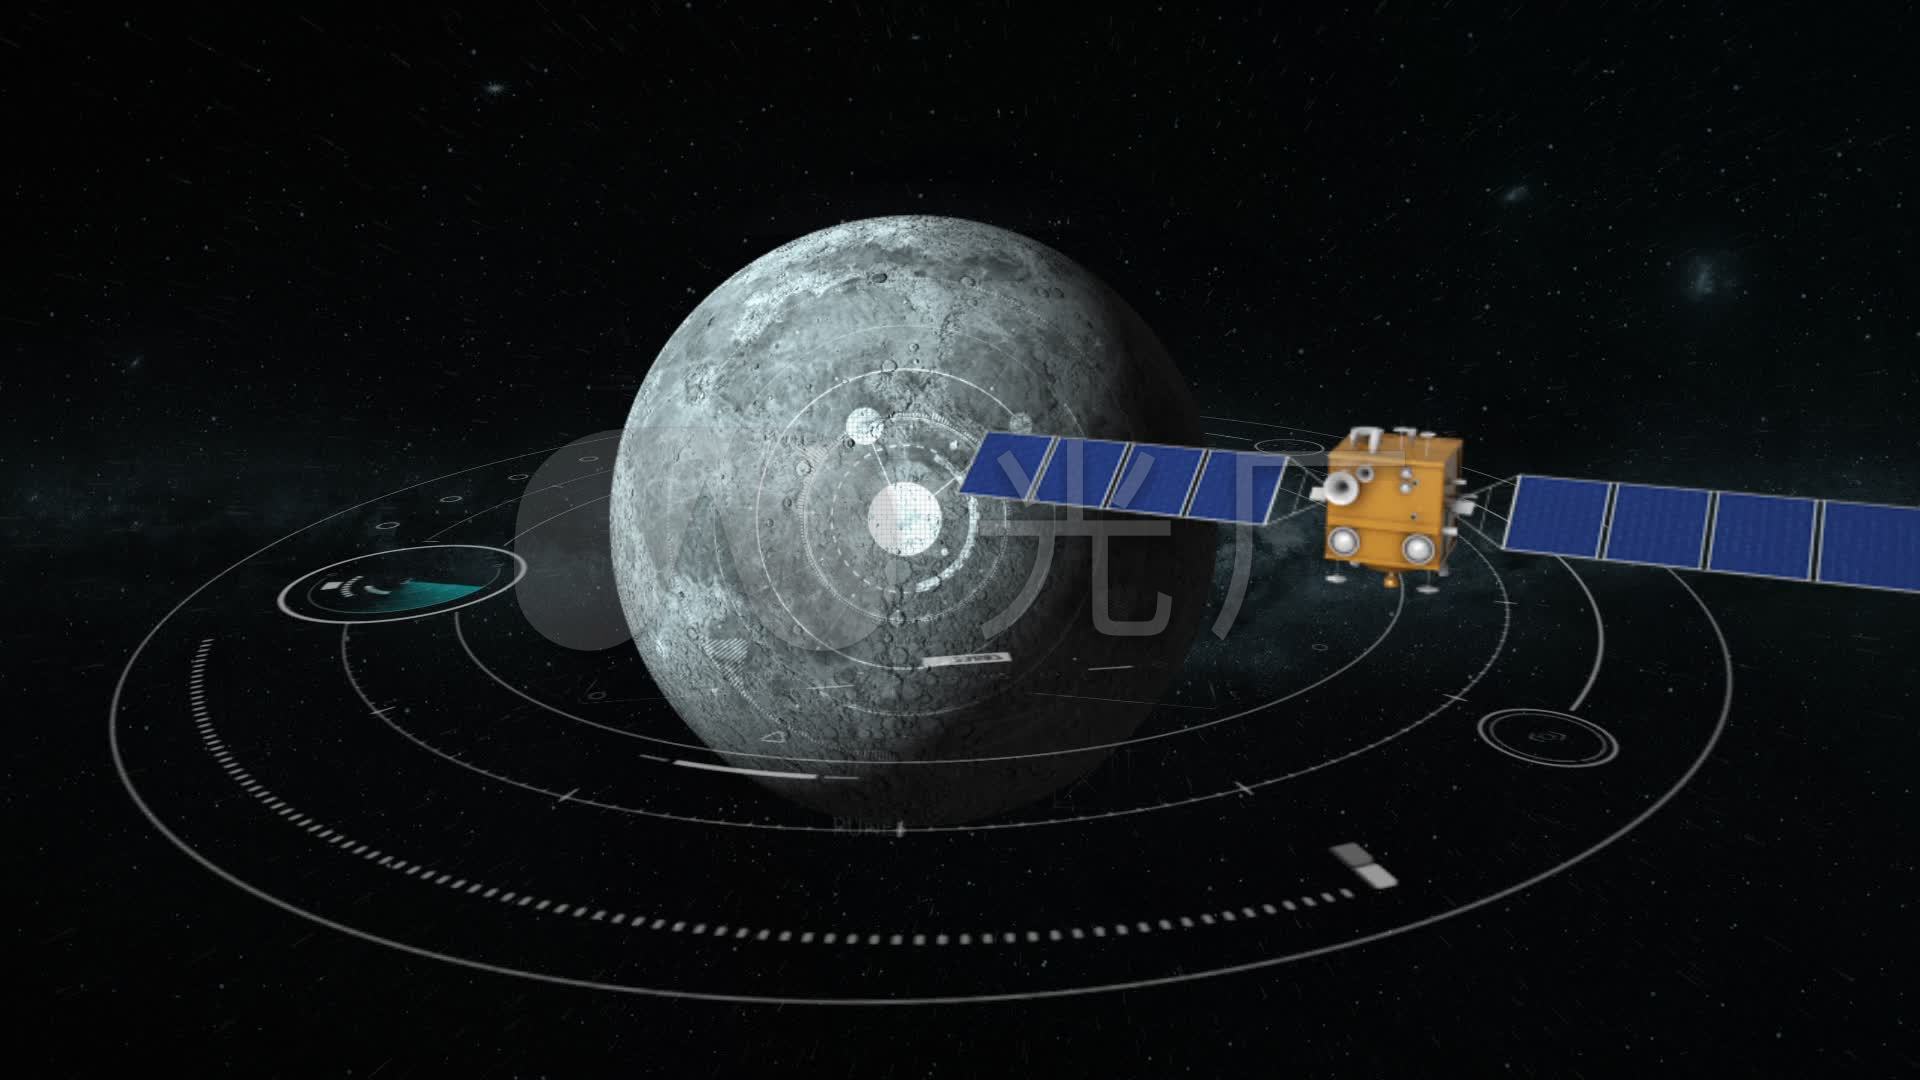 我国探月工程有新进展 嫦娥六号产品基本上已经生产完毕 - 科学探索 - cnBeta.COM